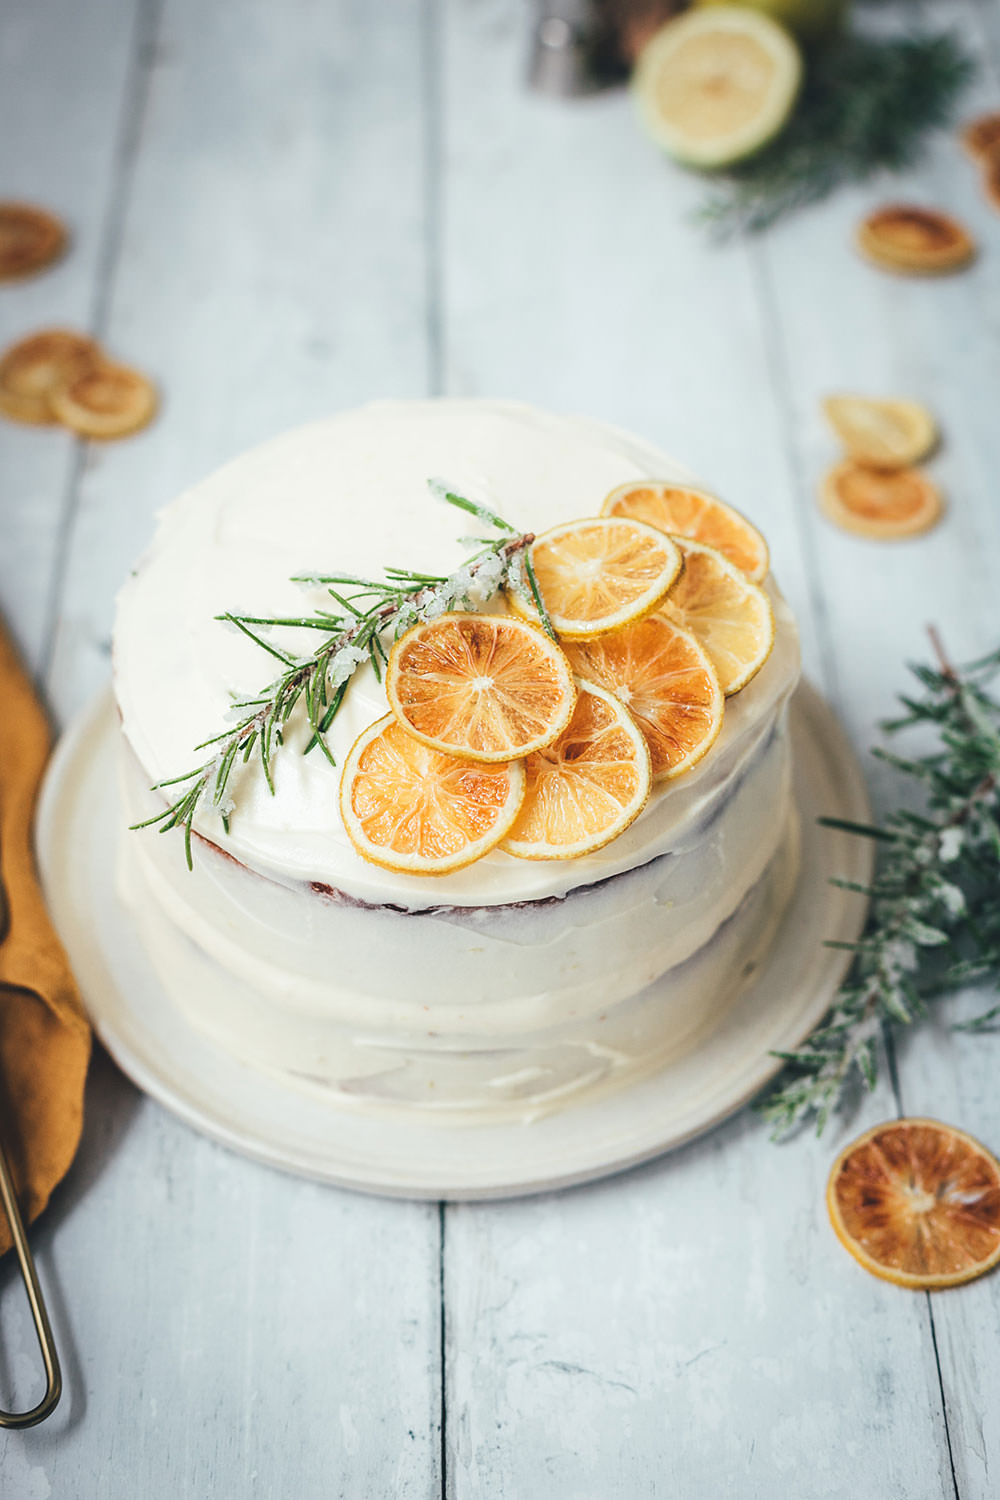 Rezept für Gin Tonic Torte | leckerer Kuchen mit Gin und Tonic | kleines Törtchen als Naked Cake zum Geburtstag | moeyskitchen.com #kuchen #torte #törtchen #gintonic #backen #rezept #foodblog #foodblogger #geburtstagskuchen #geburtstagstorte